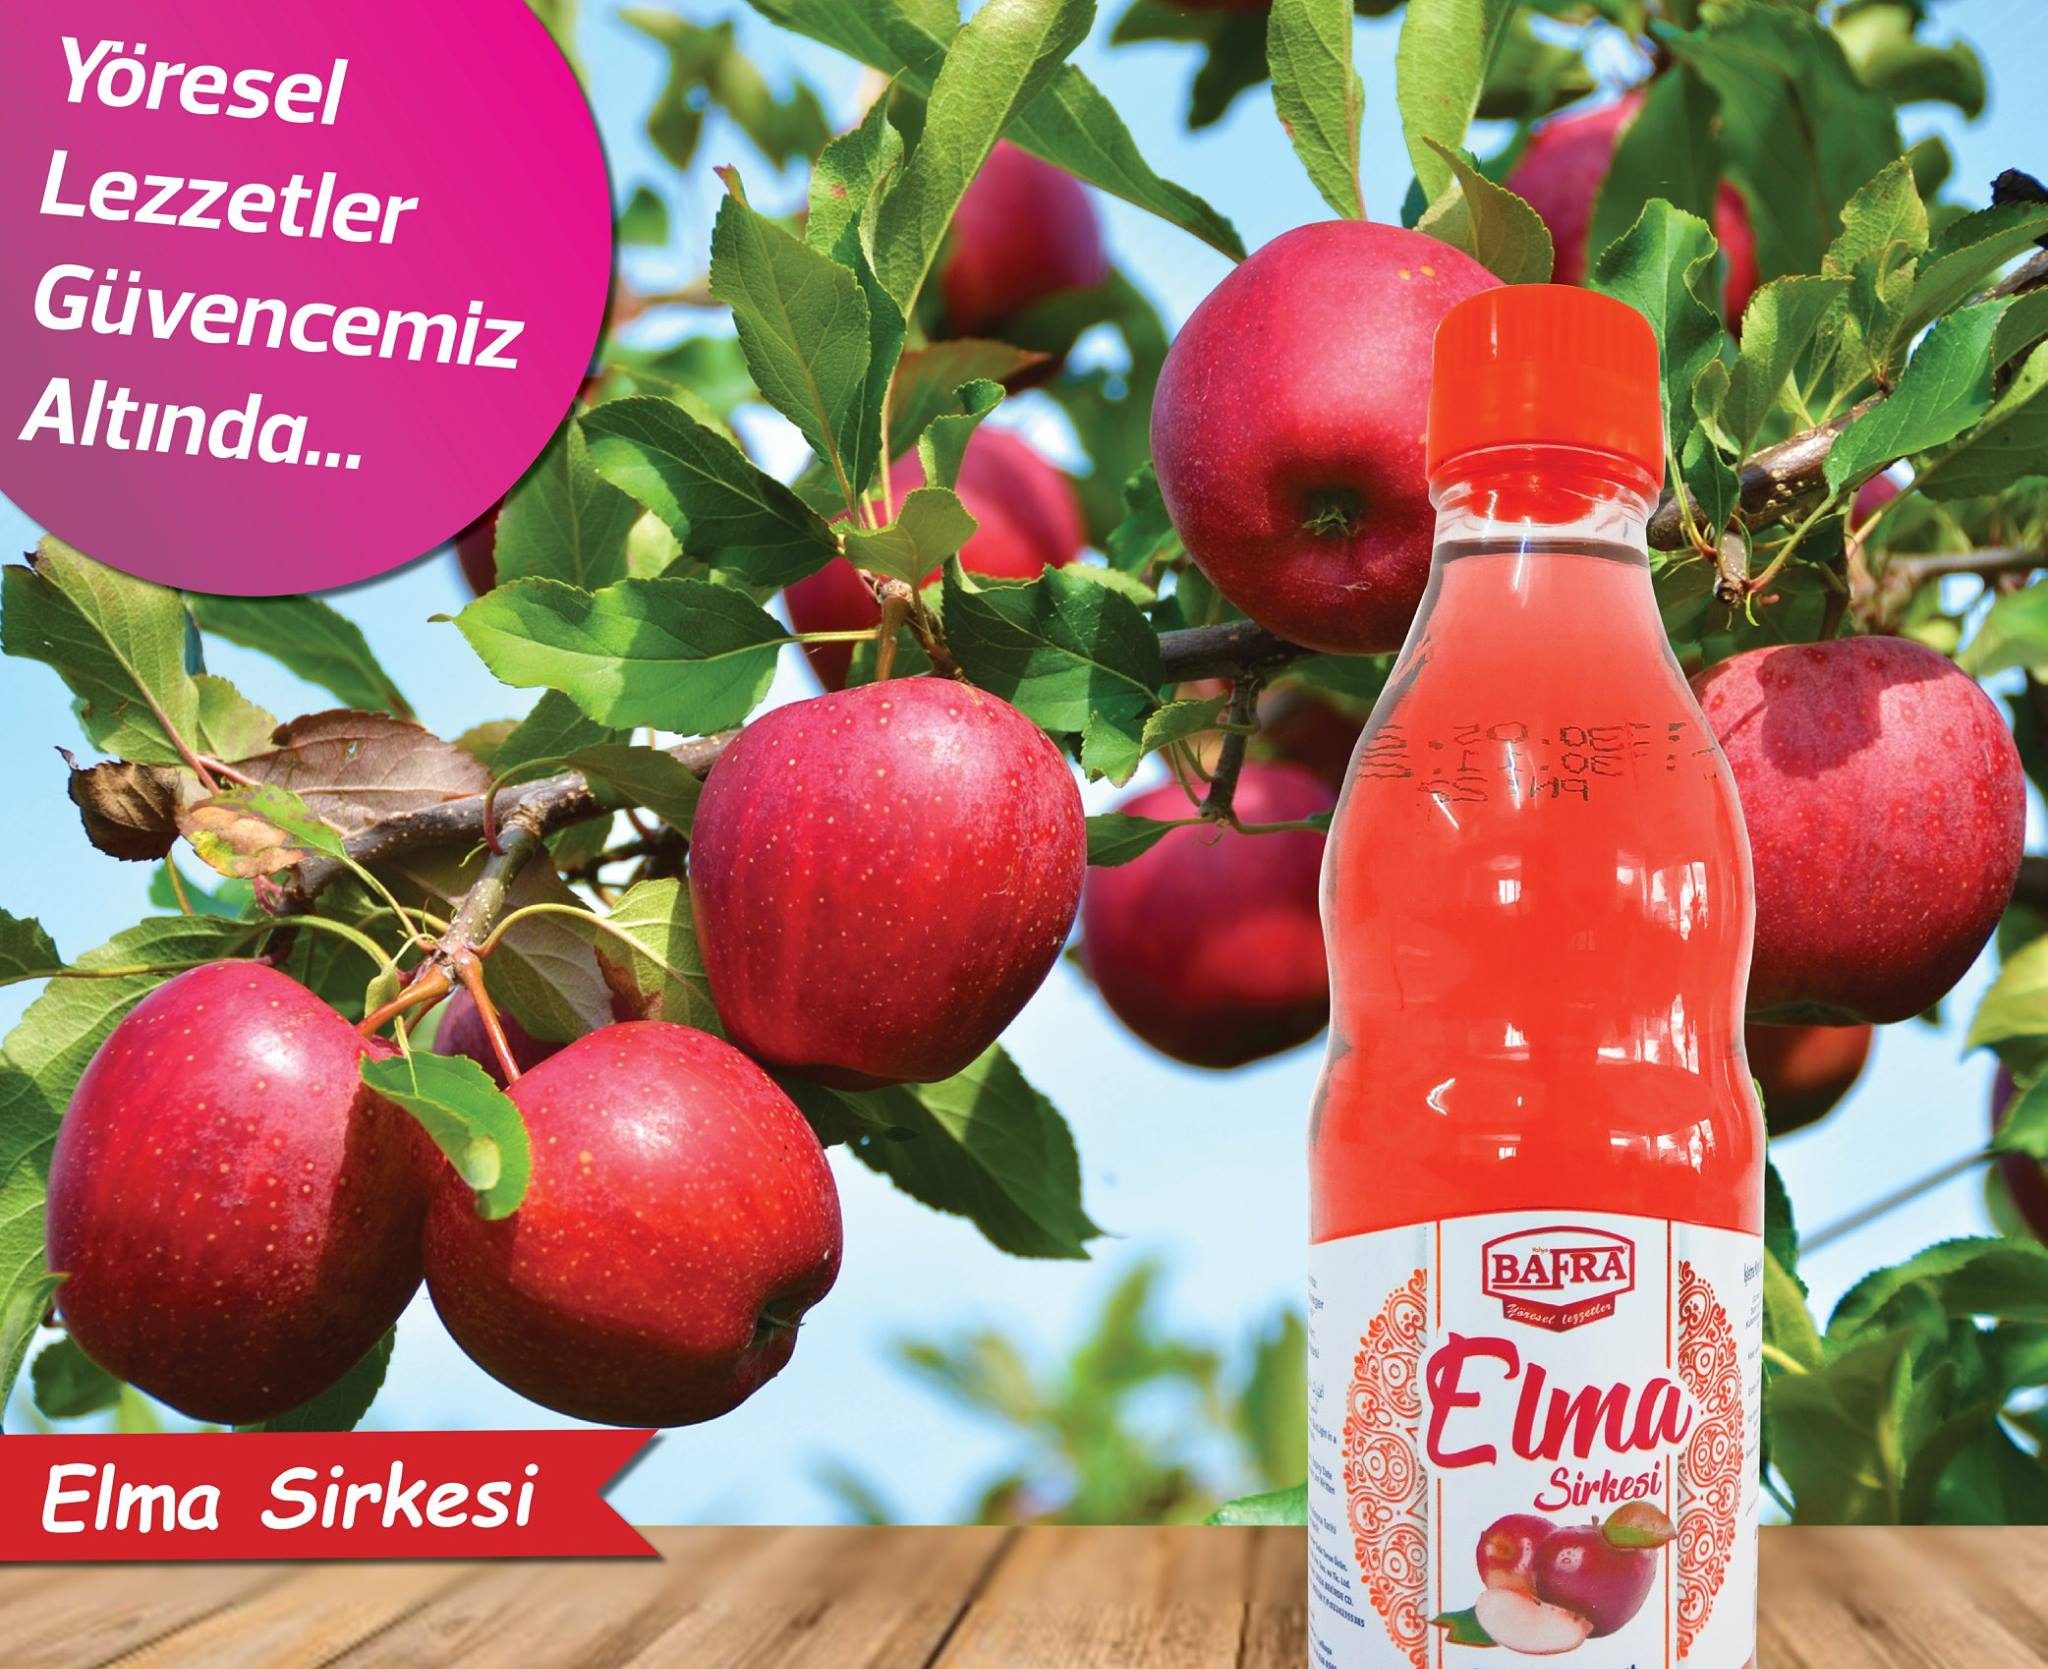 Bafra Elma Sirkesi, Kıbrıs Elma Sirkesi, Apple Vinegar